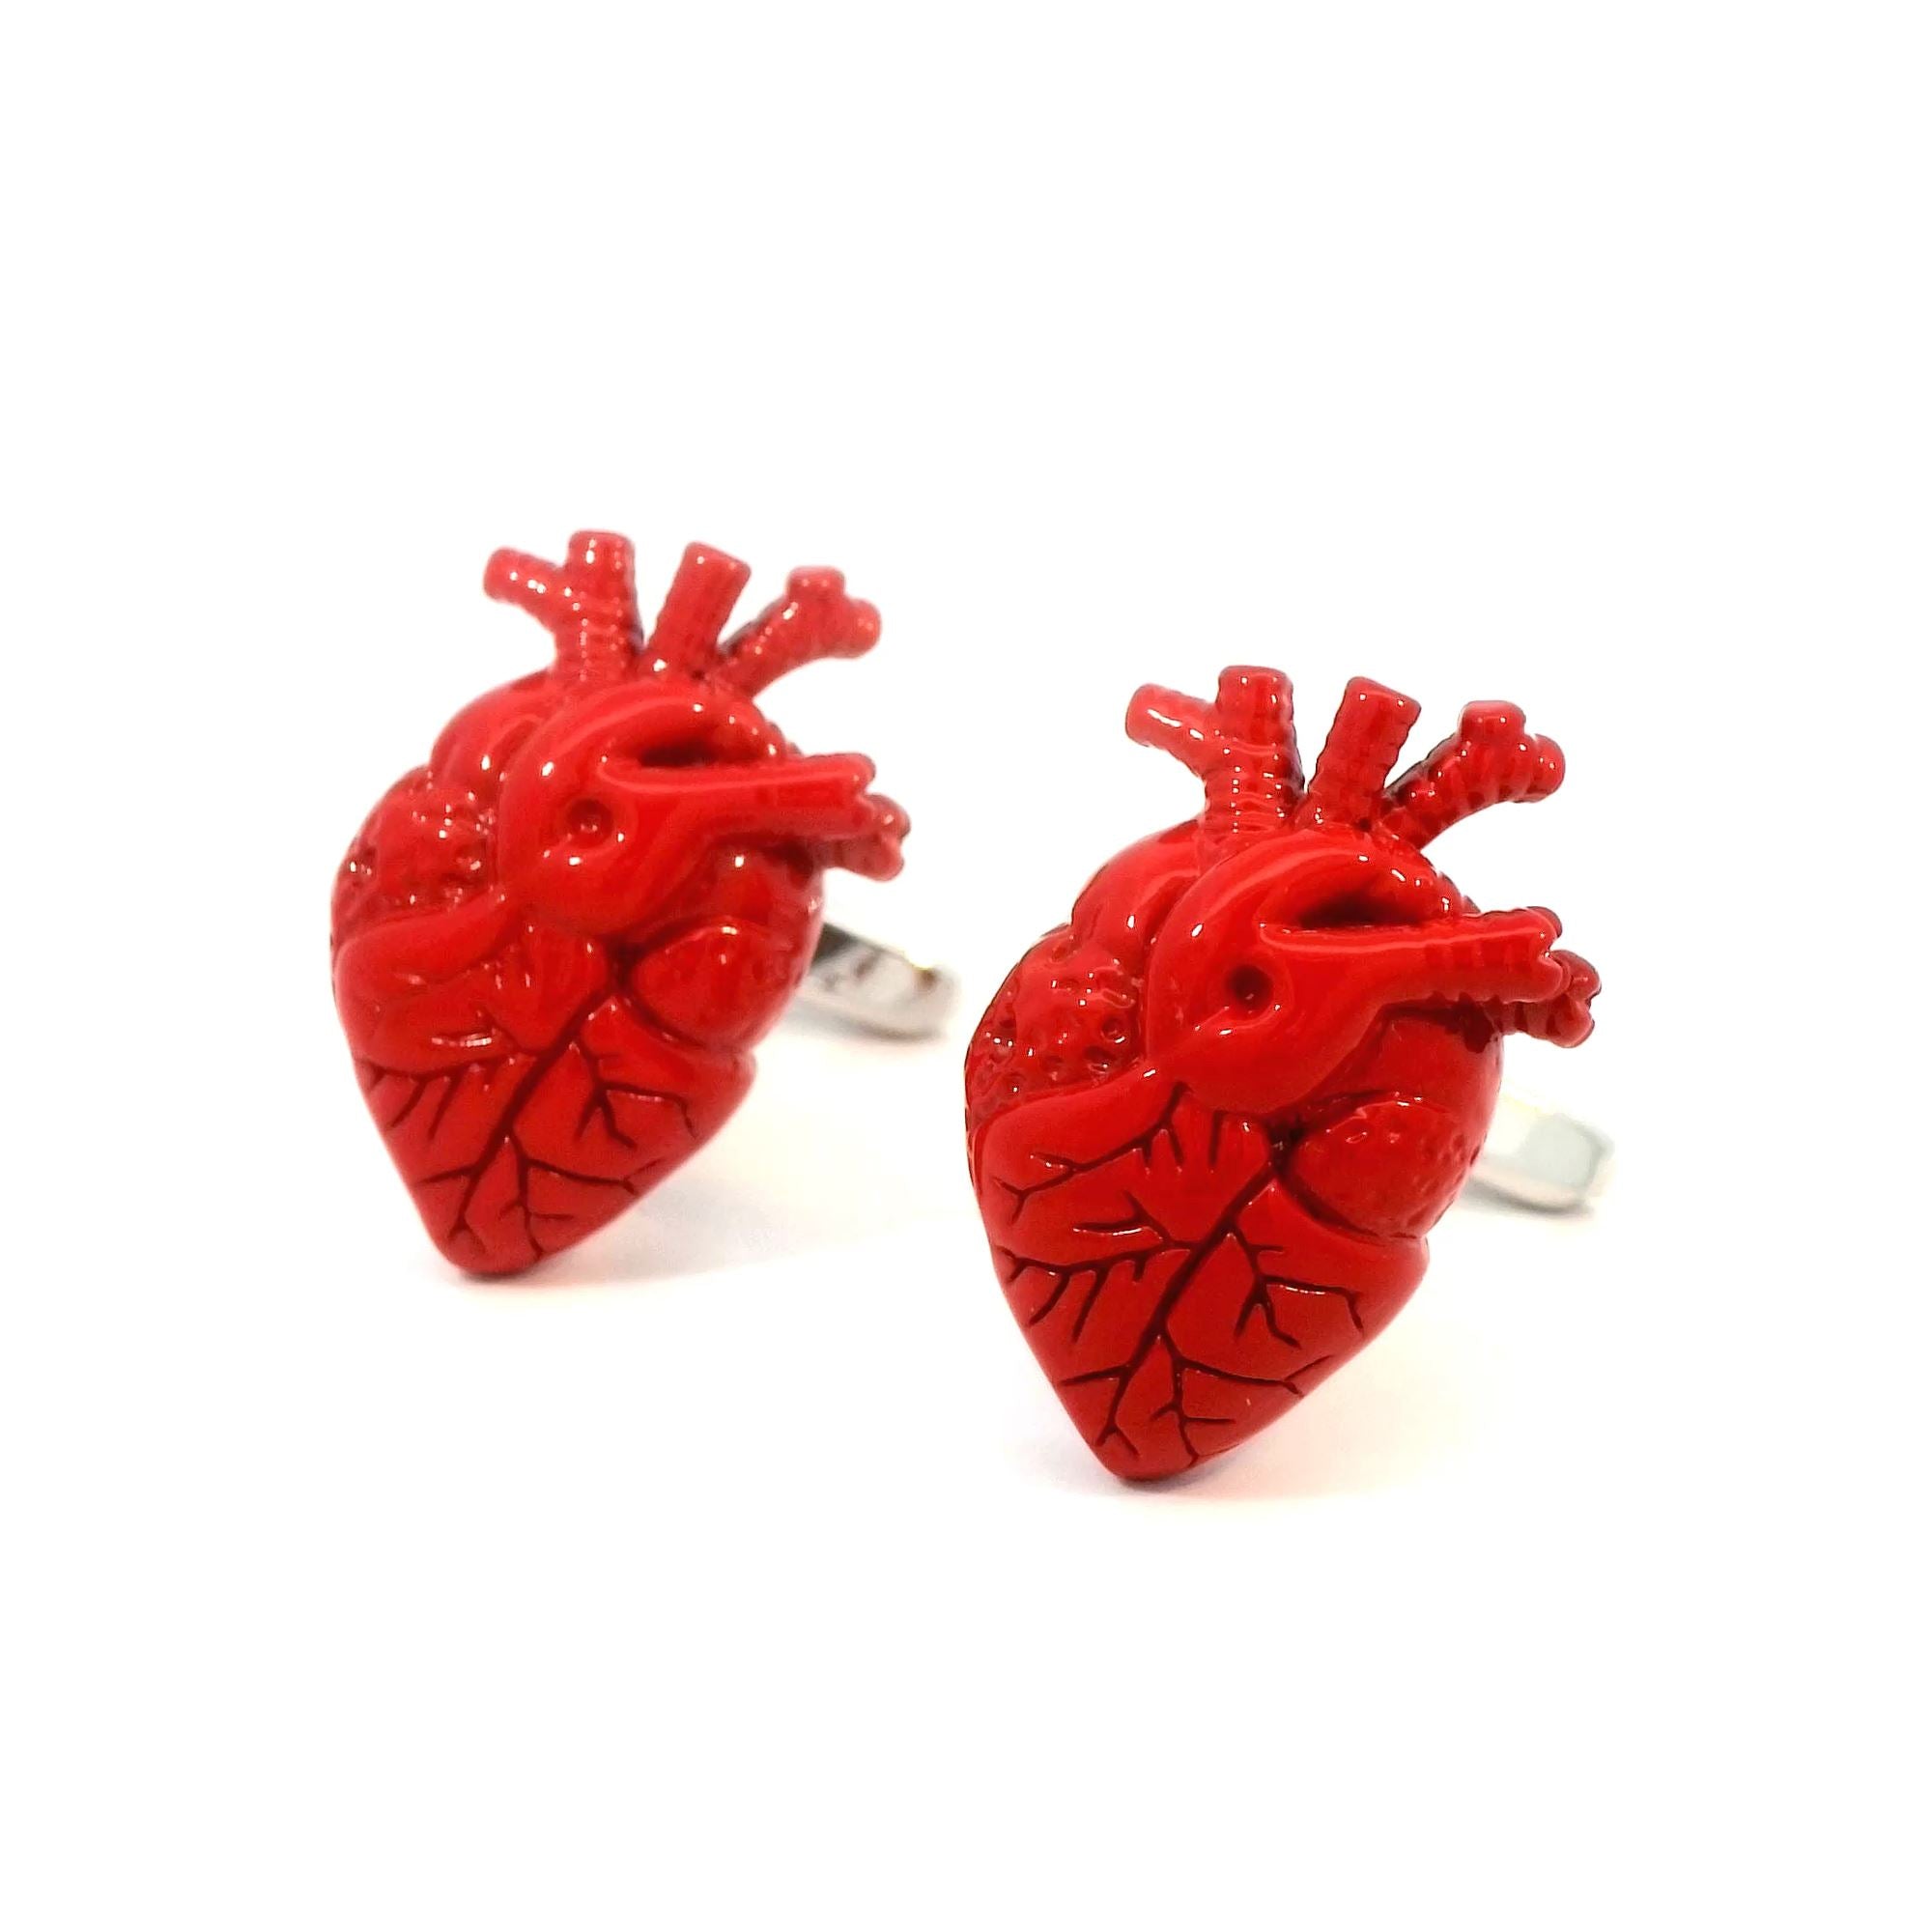 Anatomical Heart Cufflinks Novelty Cufflinks Clinks Australia Anatomical Heart Cufflinks 